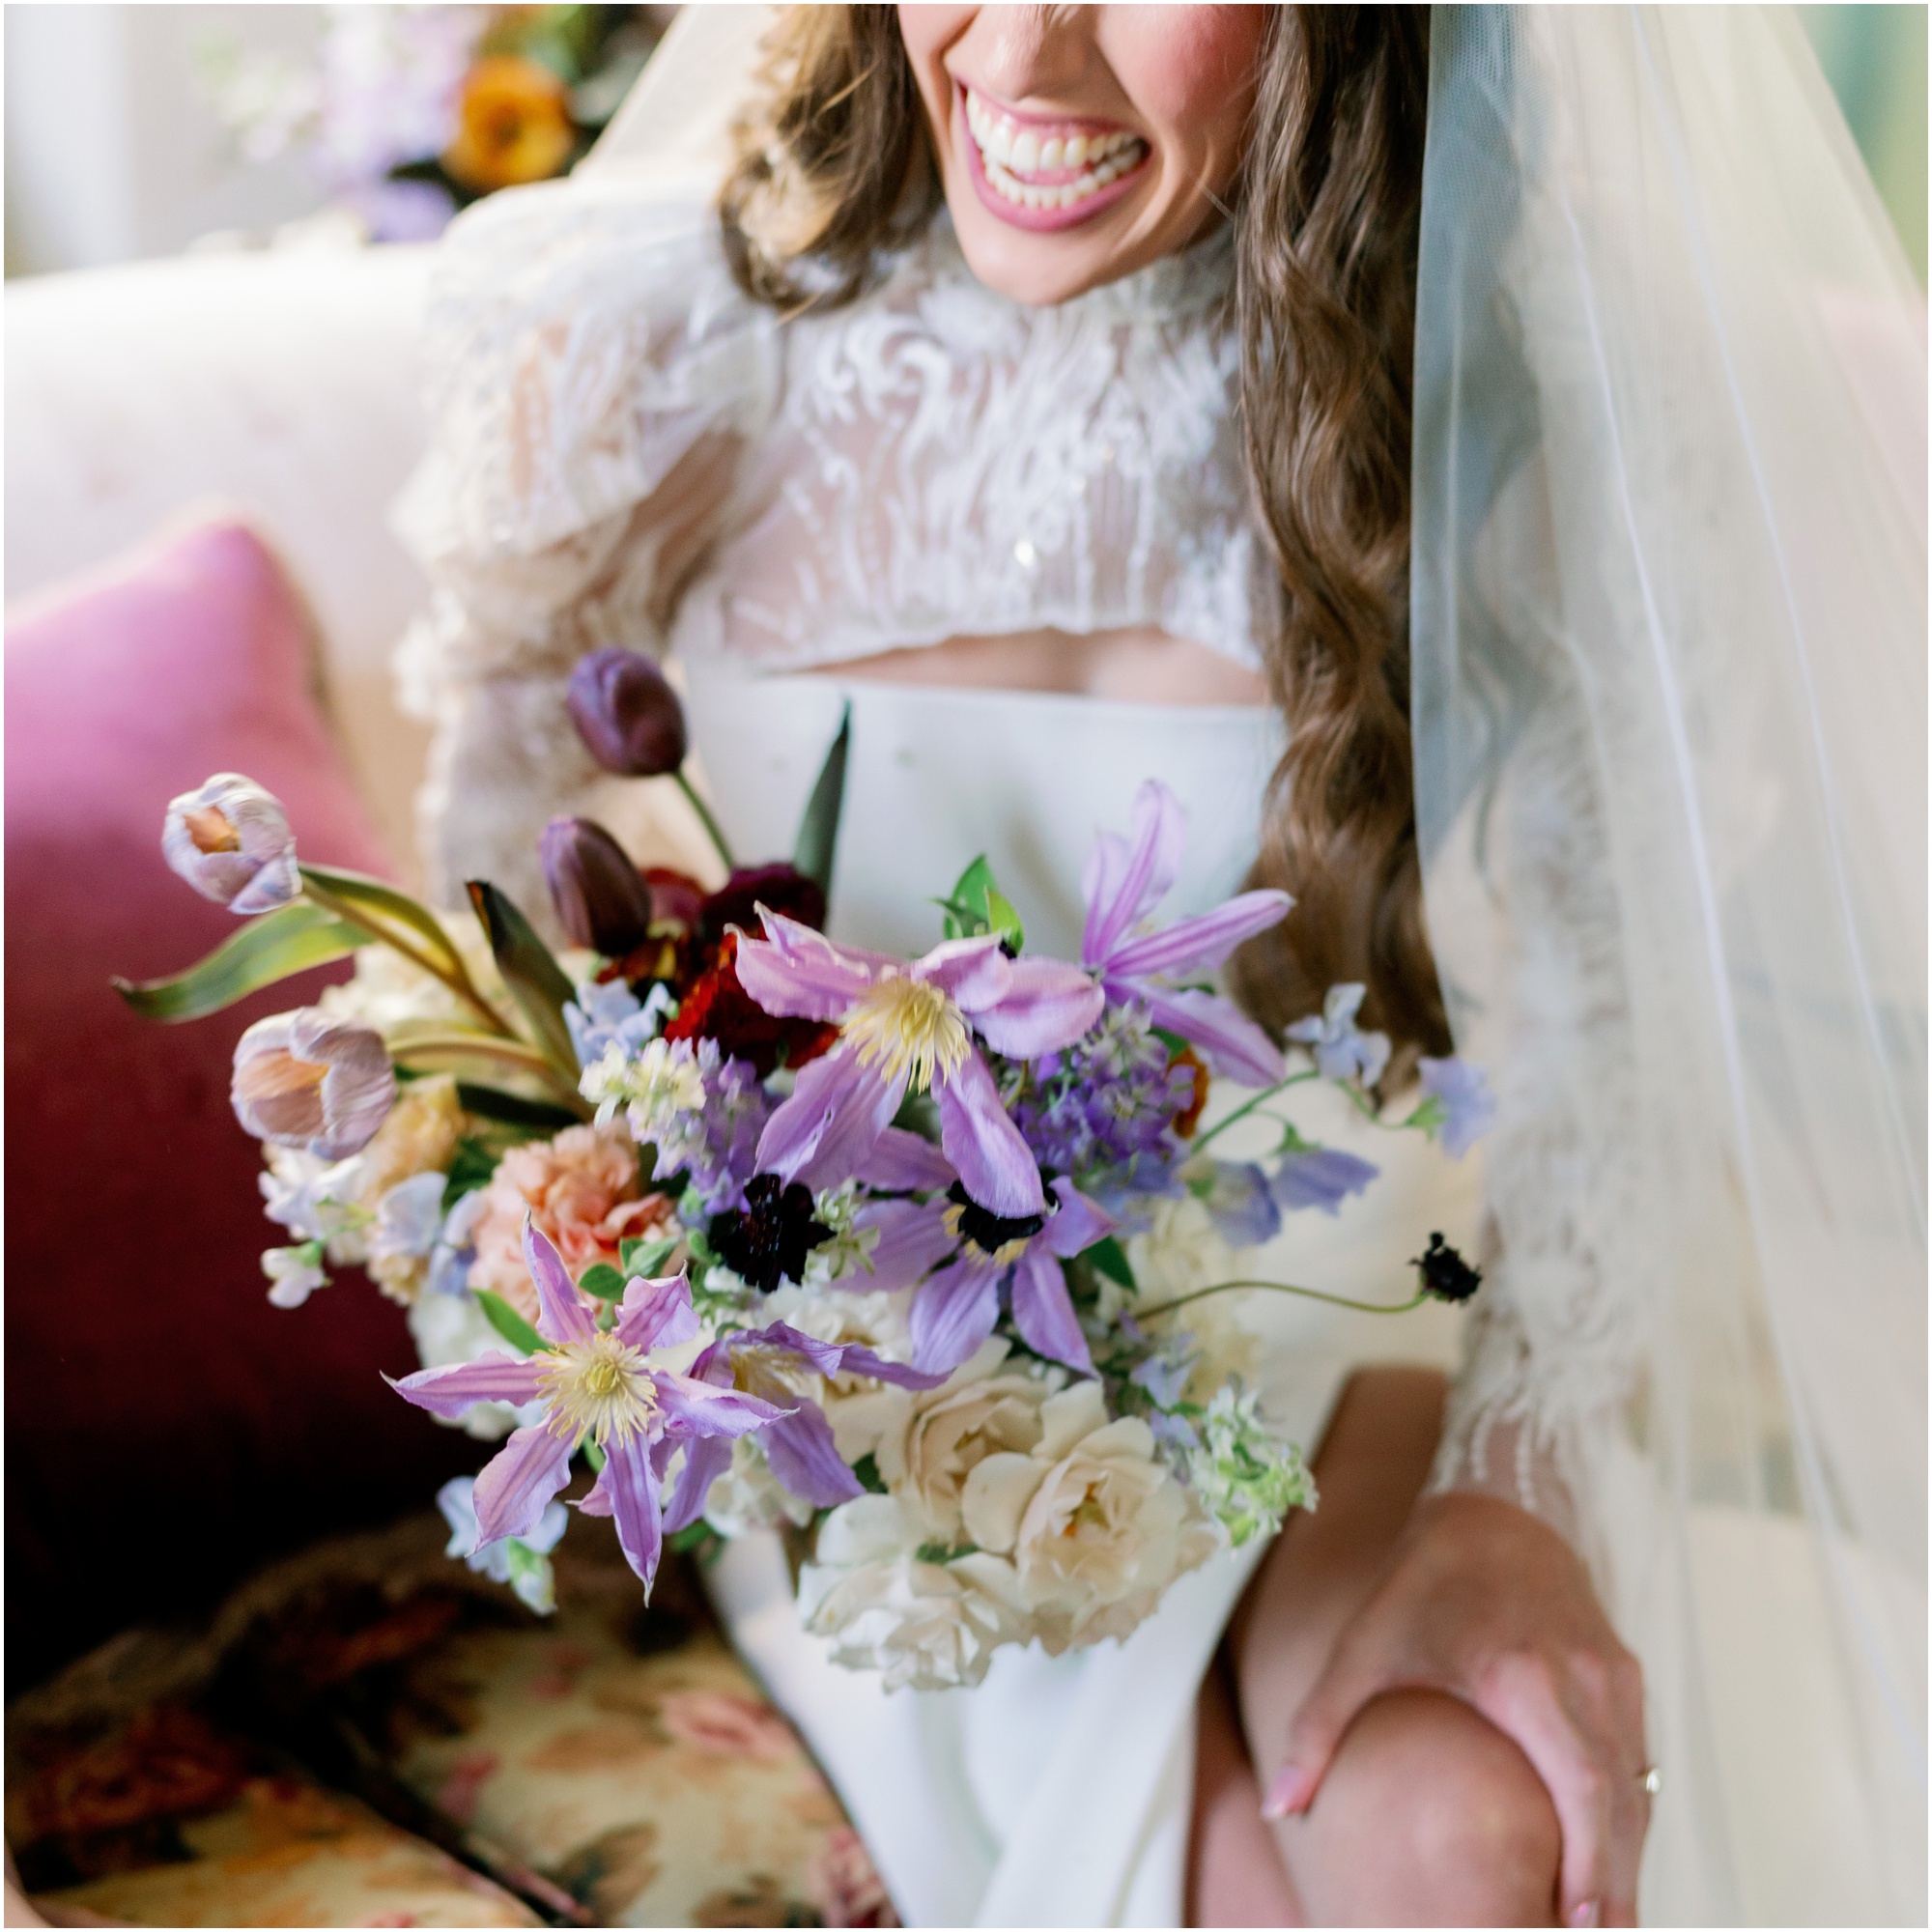 Bride holding colorful bouquet